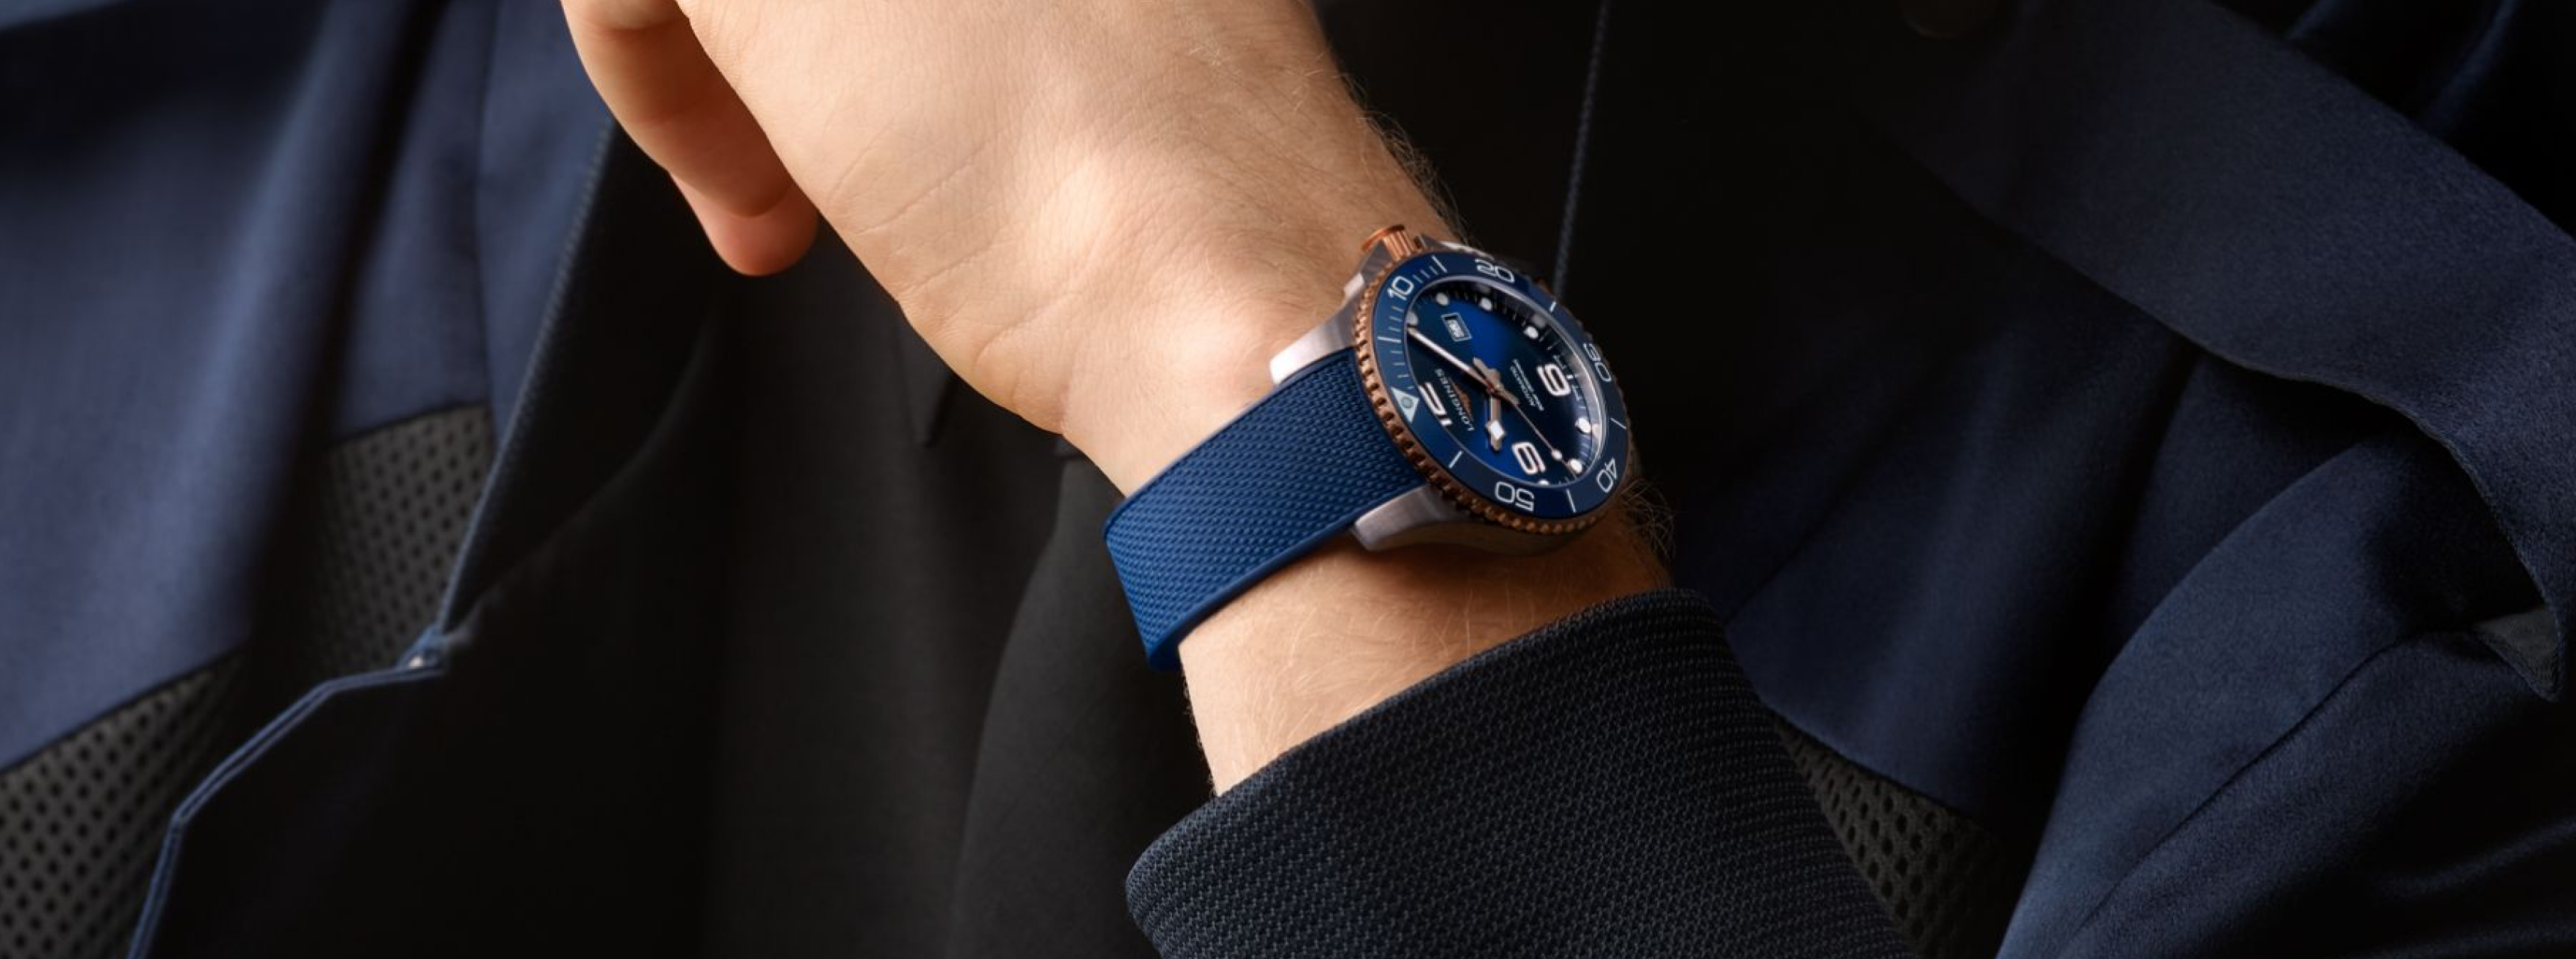 Синие часы на мужской руке, фотосессия для дизайна компании Watch approach